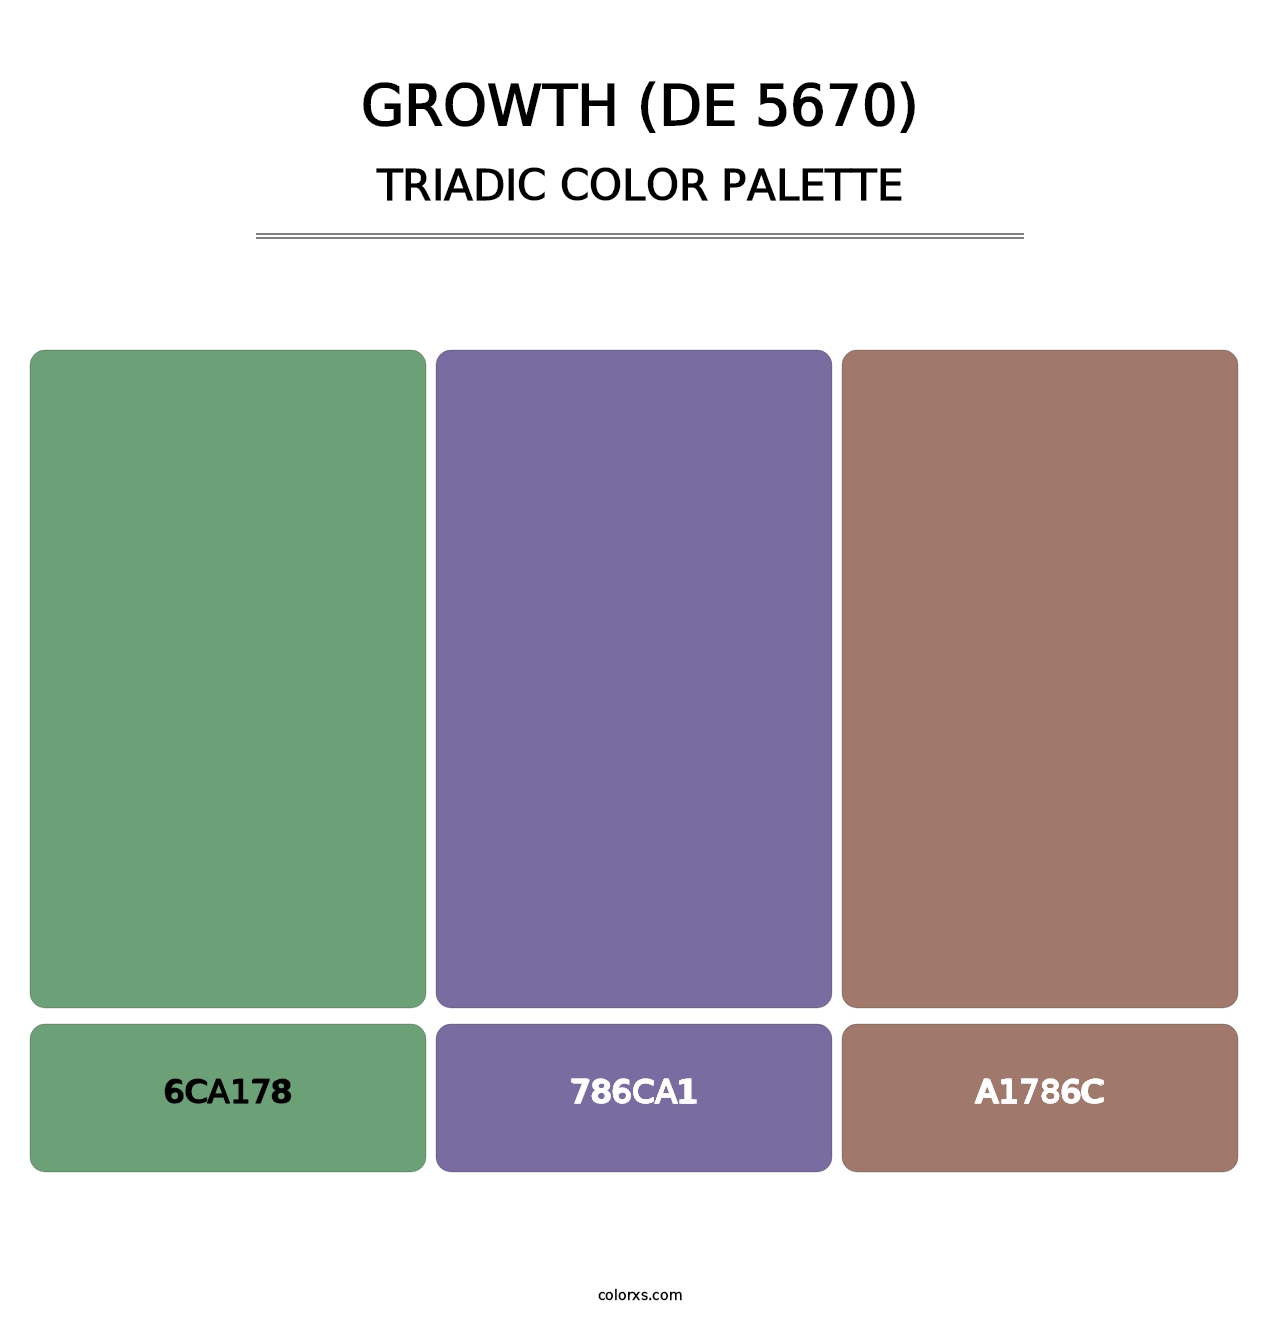 Growth (DE 5670) - Triadic Color Palette